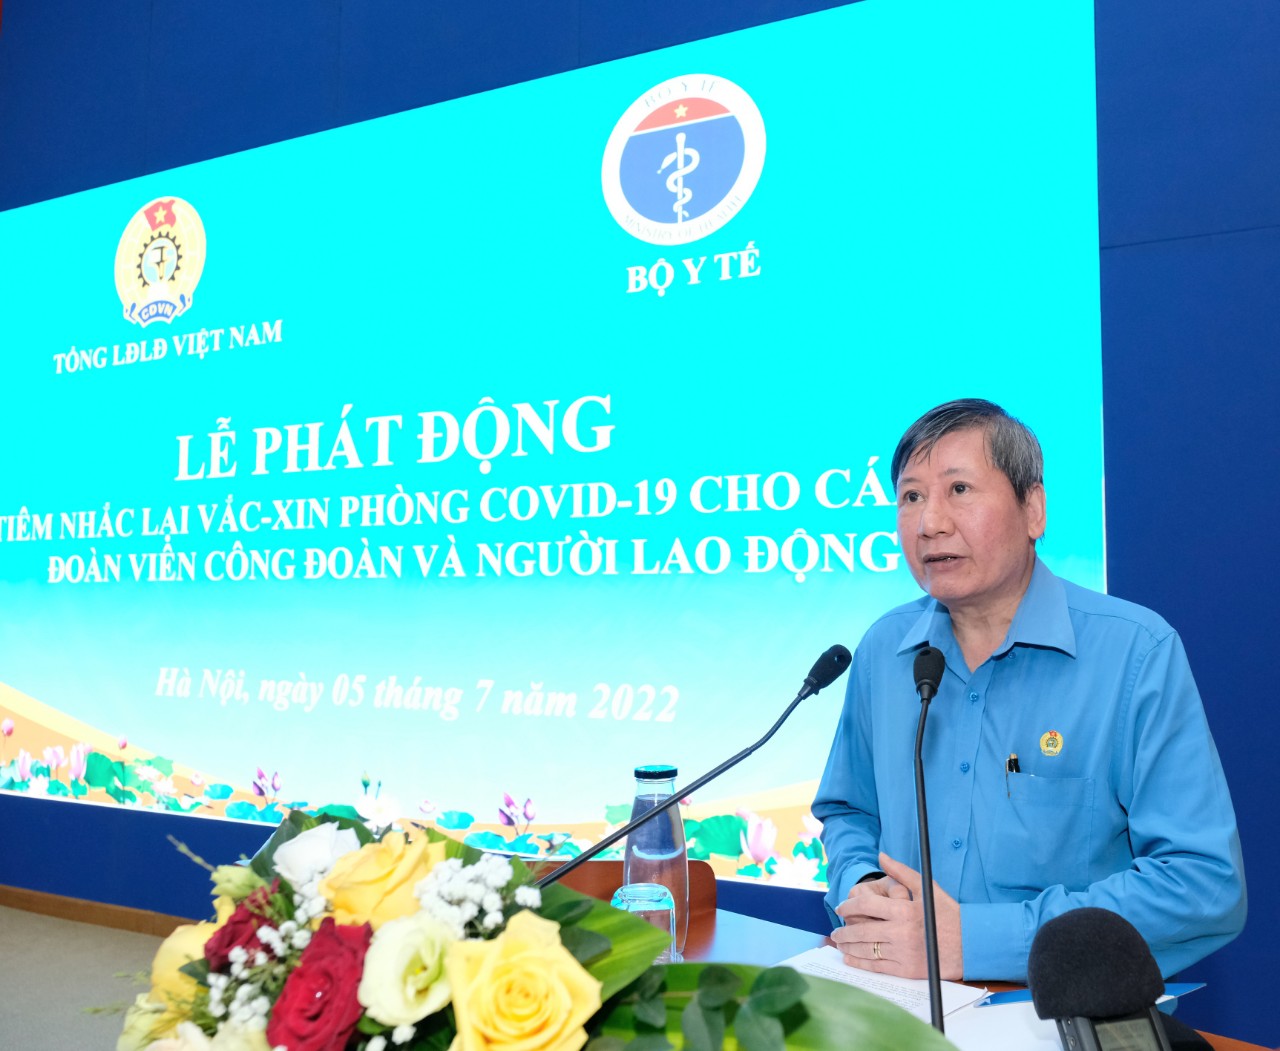 Thứ trưởng Bộ Y tế cùng hơn 200 người tiêm vaccine COVID-19 tại lễ phát động tiêm mũi 3 và 4-3